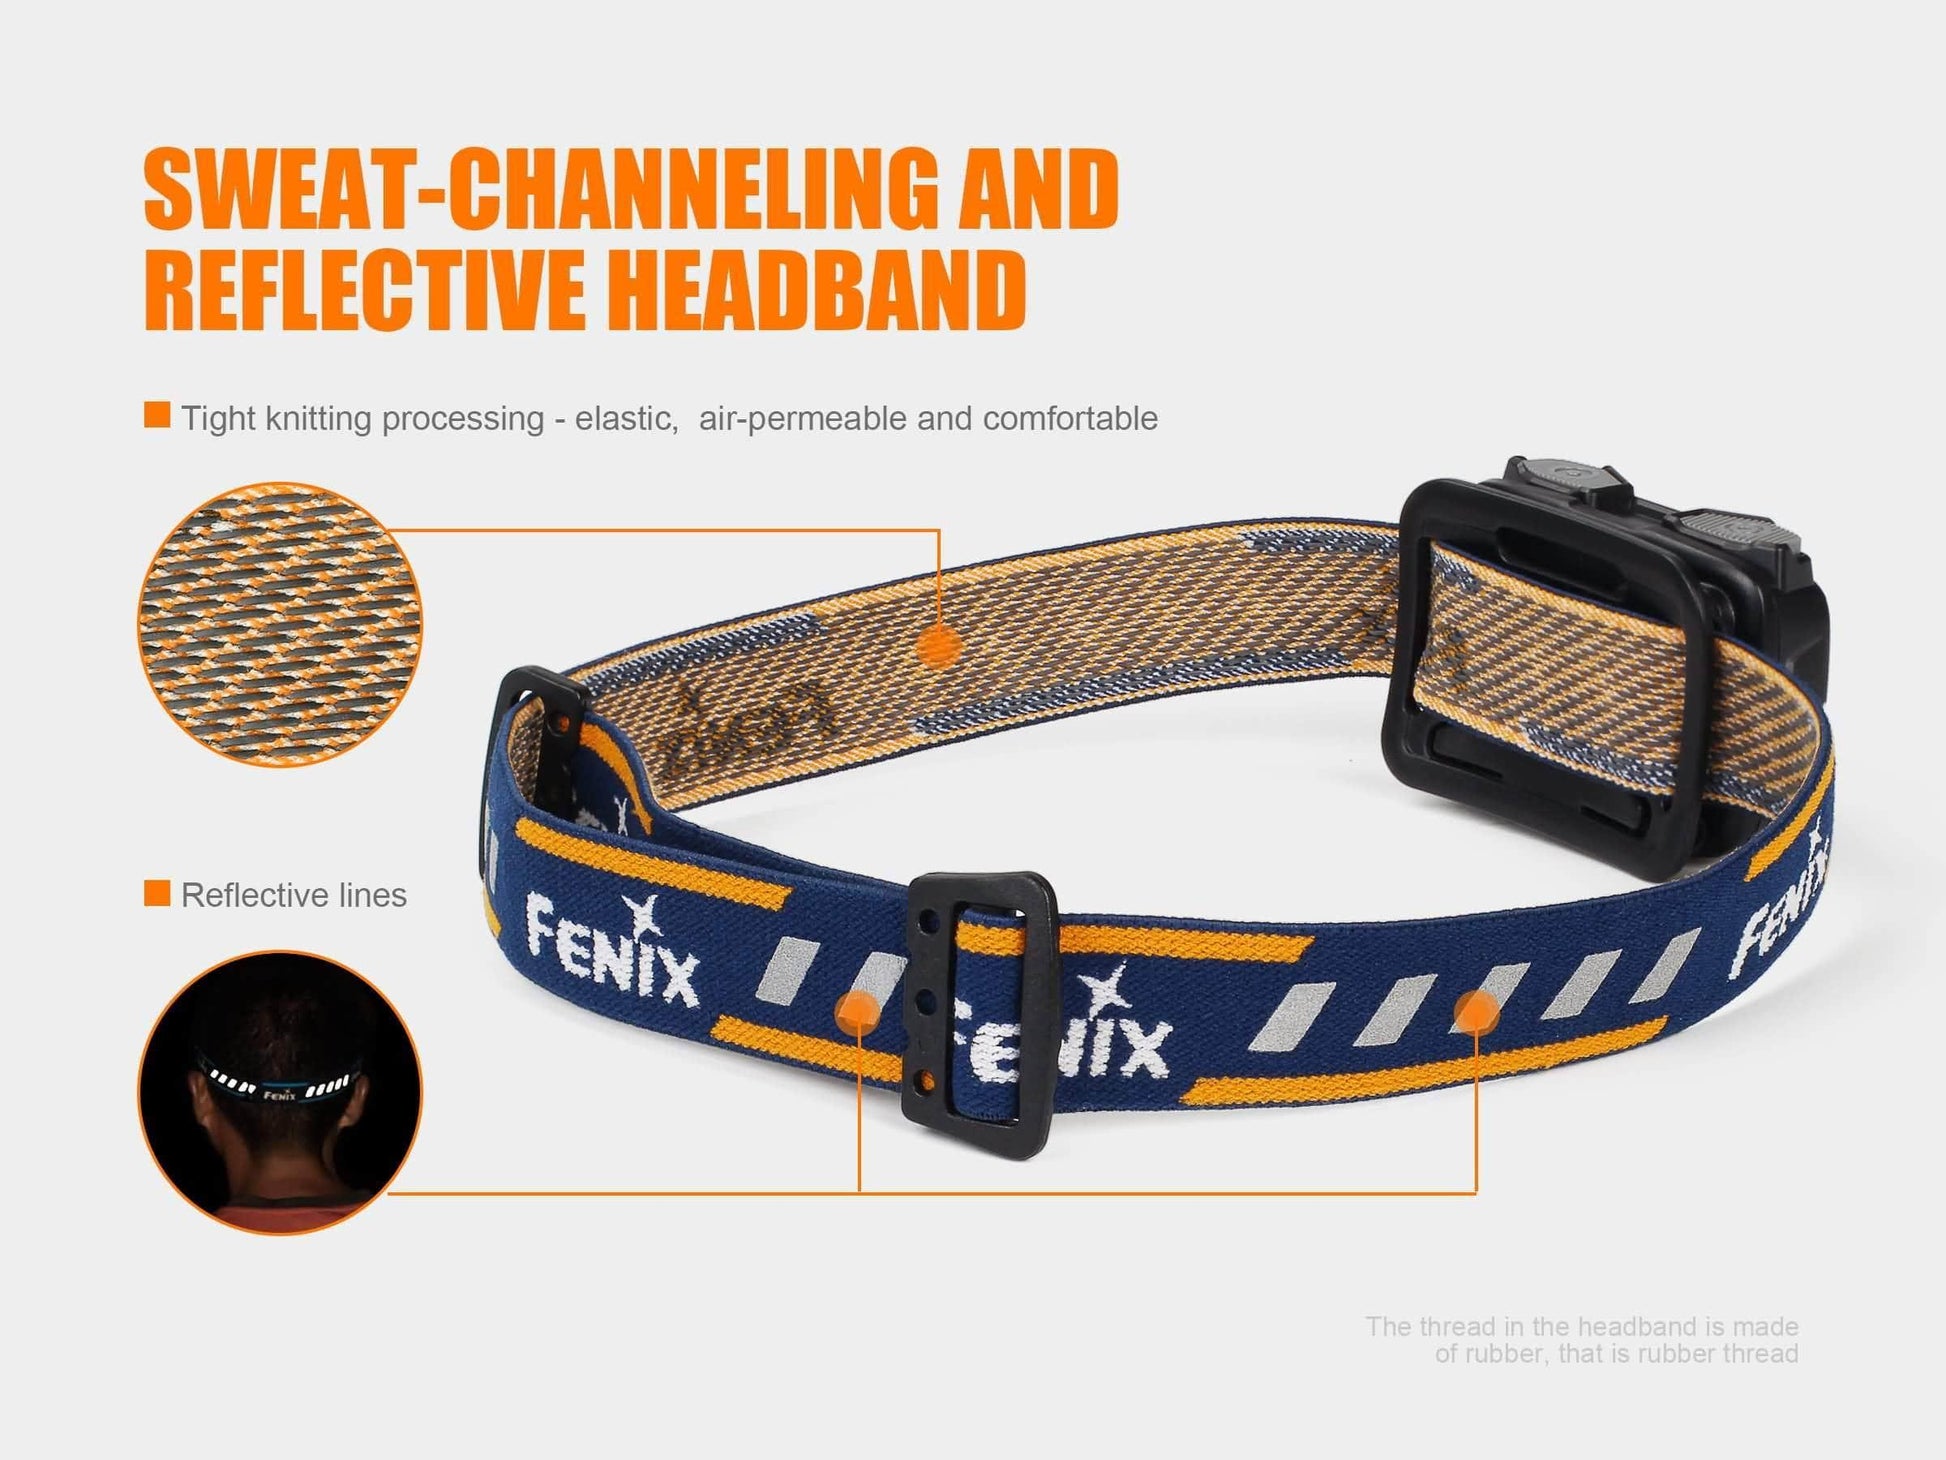 Fenix HL32R rechargeable - 600 lumens Site Officiel FENIX® - Votre boutique en ligne Fenix®